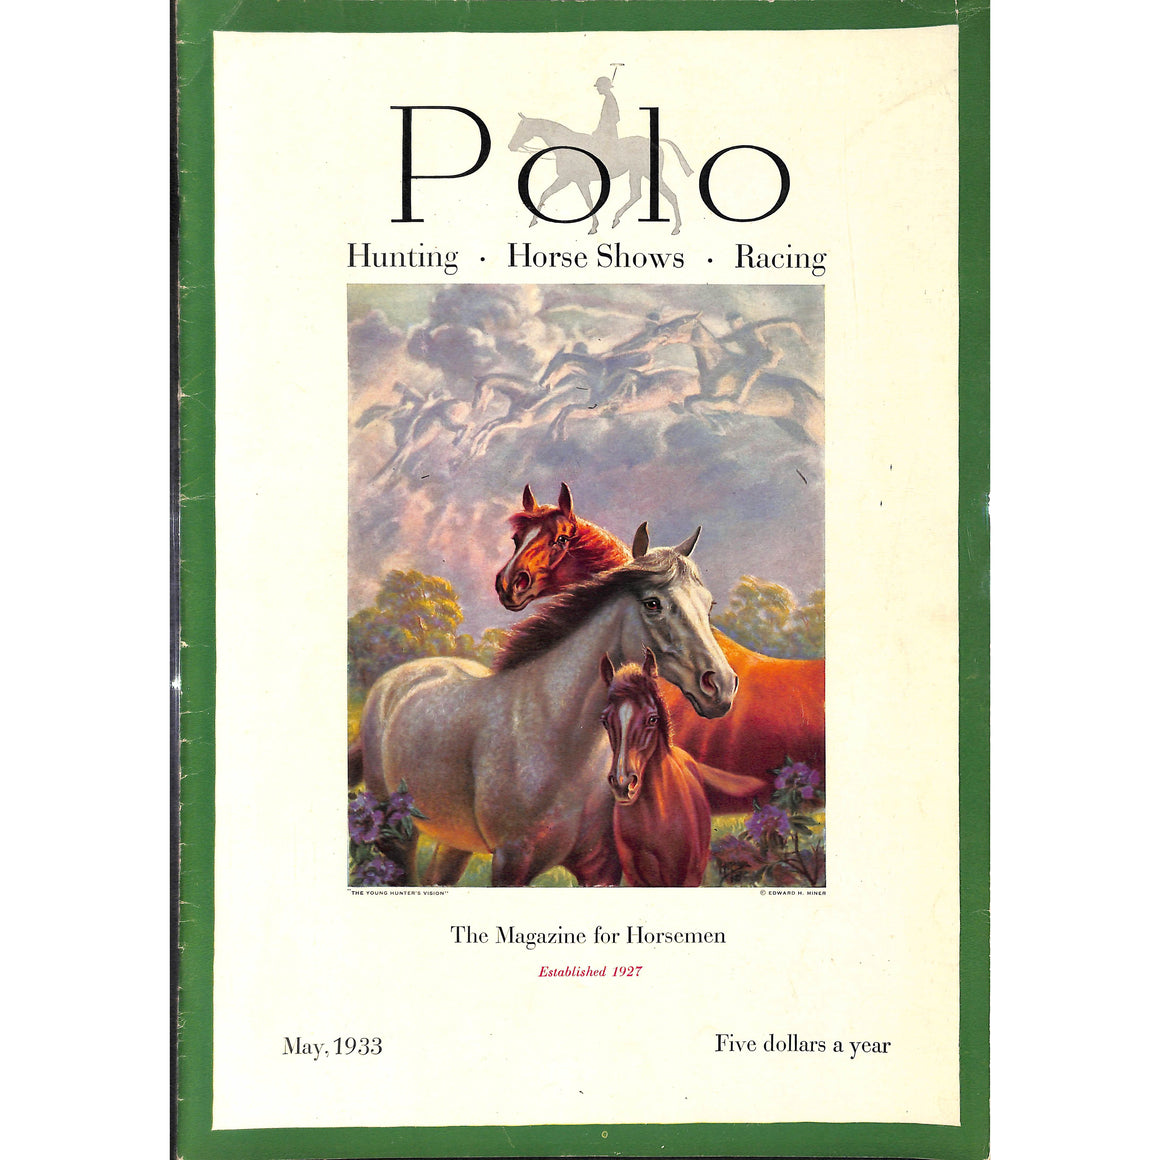 "Polo Magazine May, 1933"